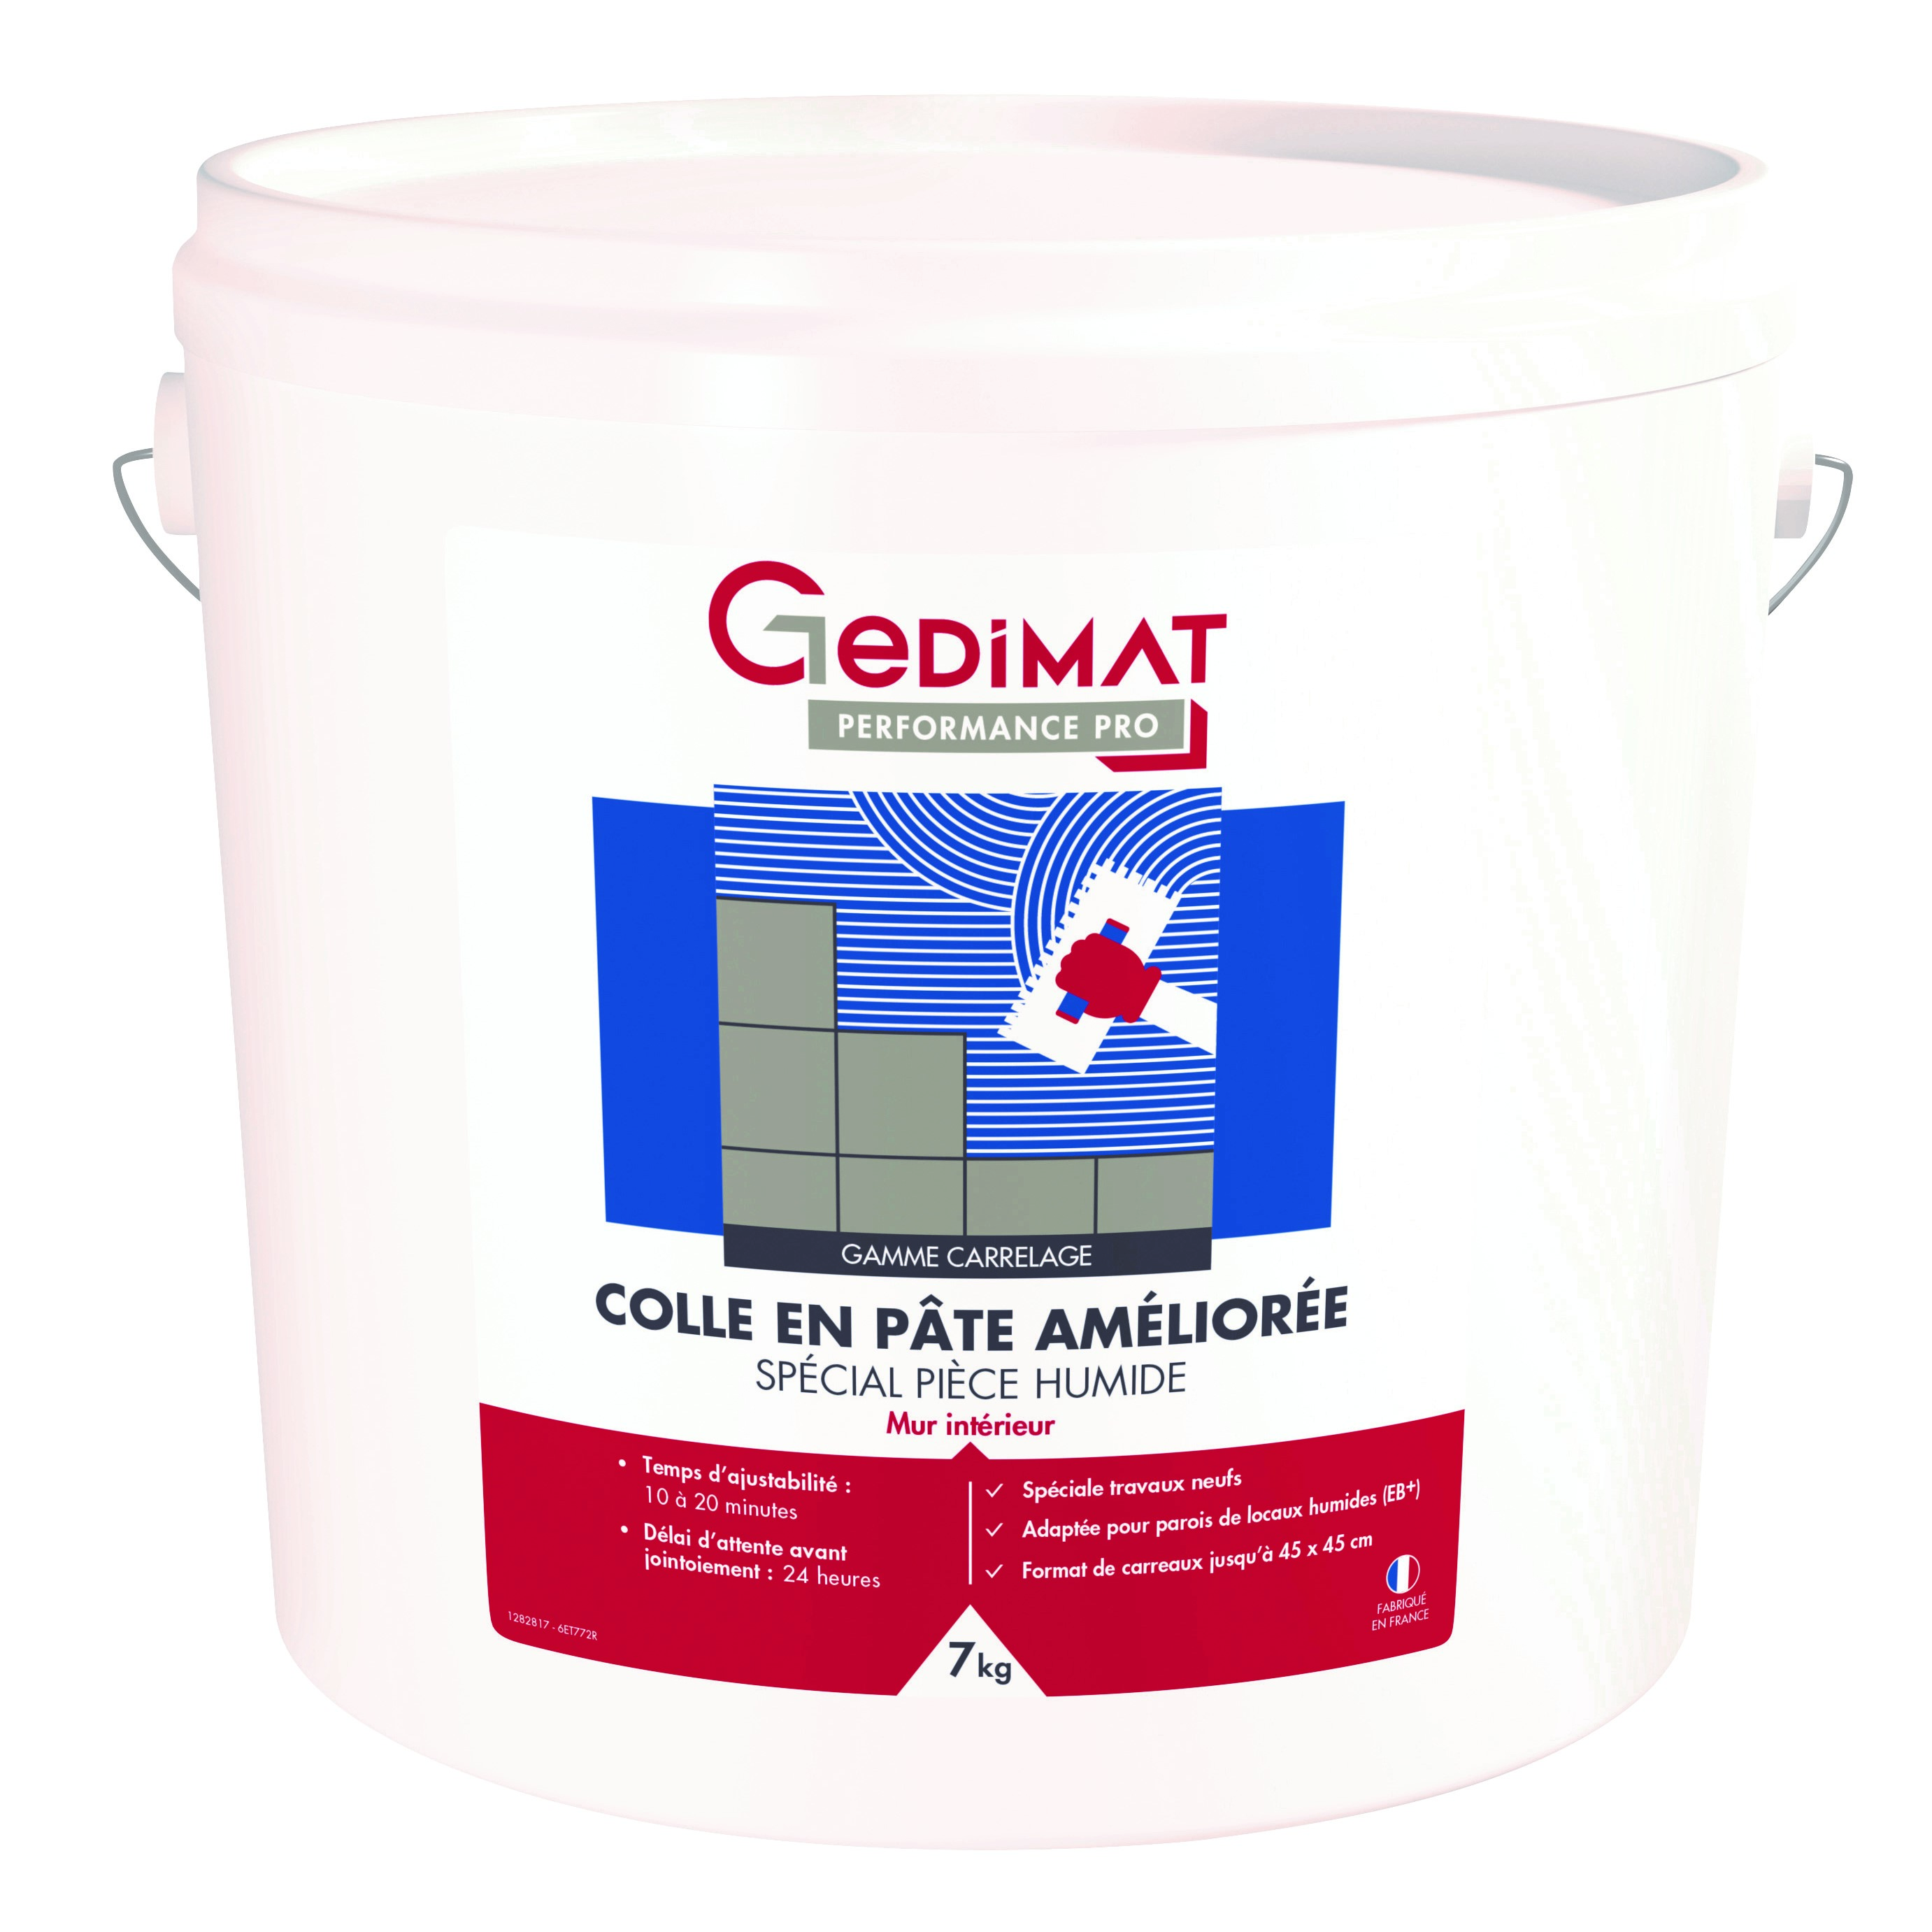 GEDIMAT Performance Pro - Colle en pâte améliorée NF spécial pièce humide - 7kg